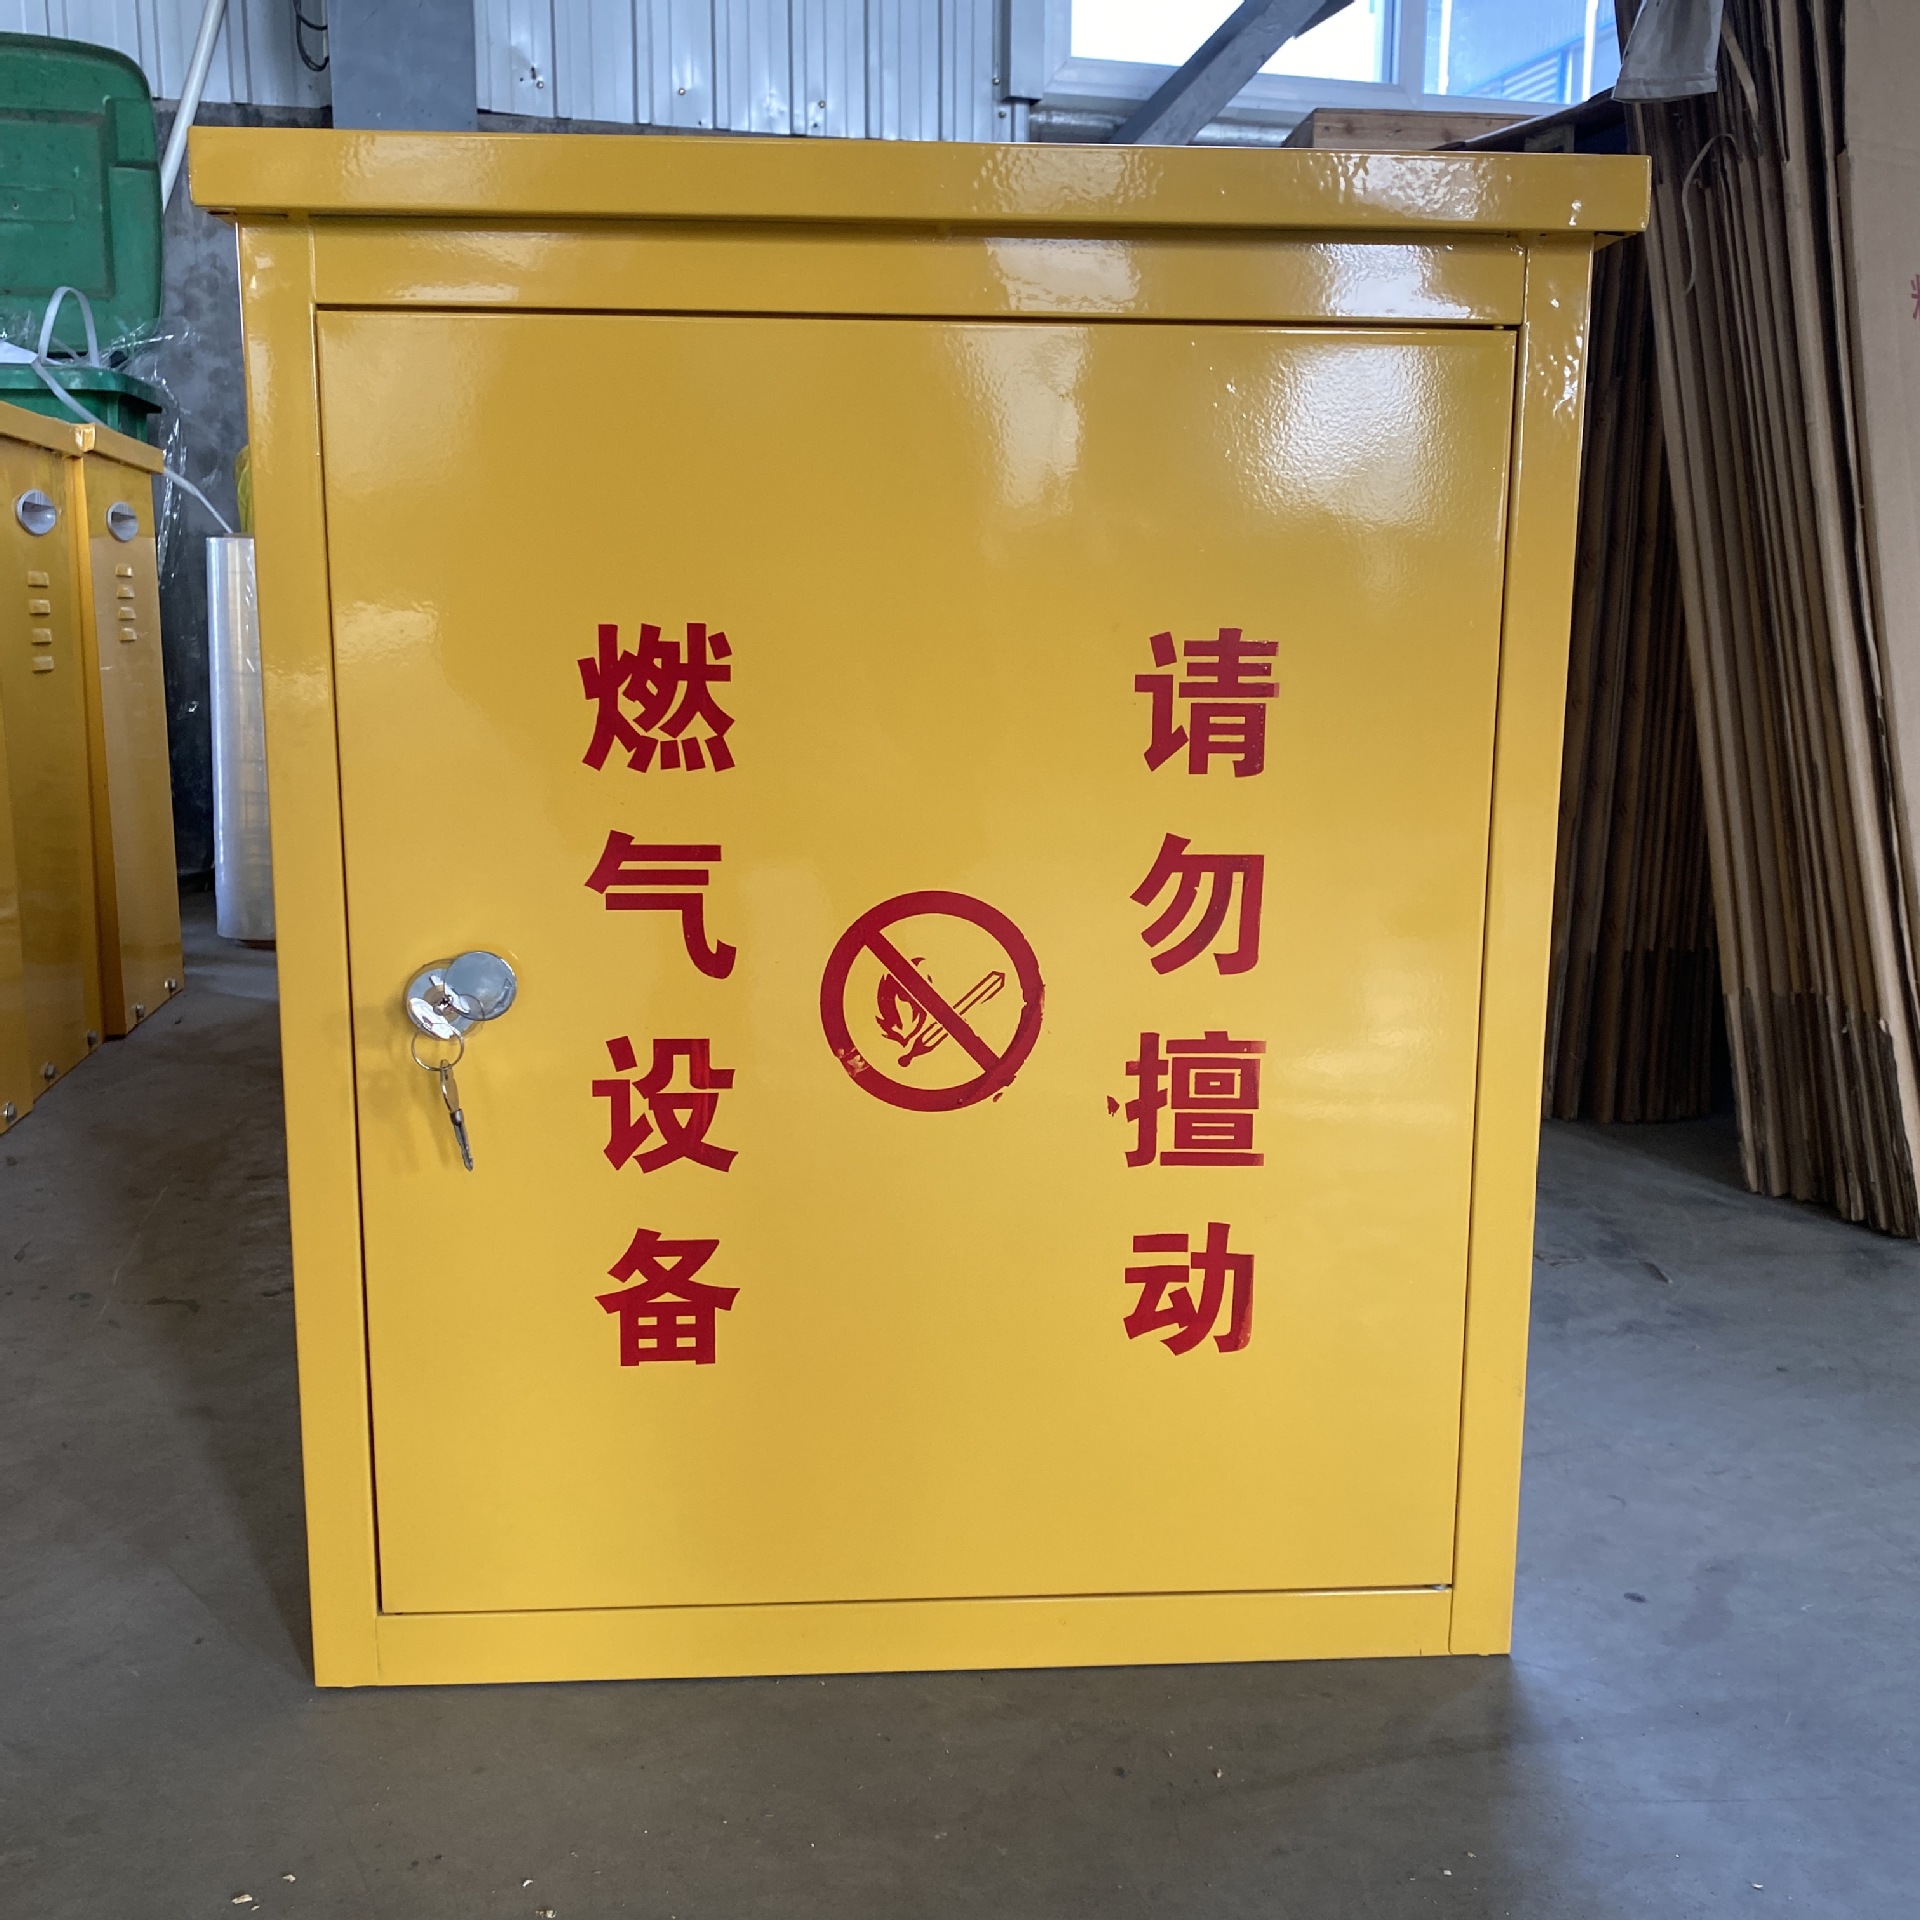 河北厂家 生产燃气调压计量撬计量柜调压柜调压箱燃气设备燃气箱